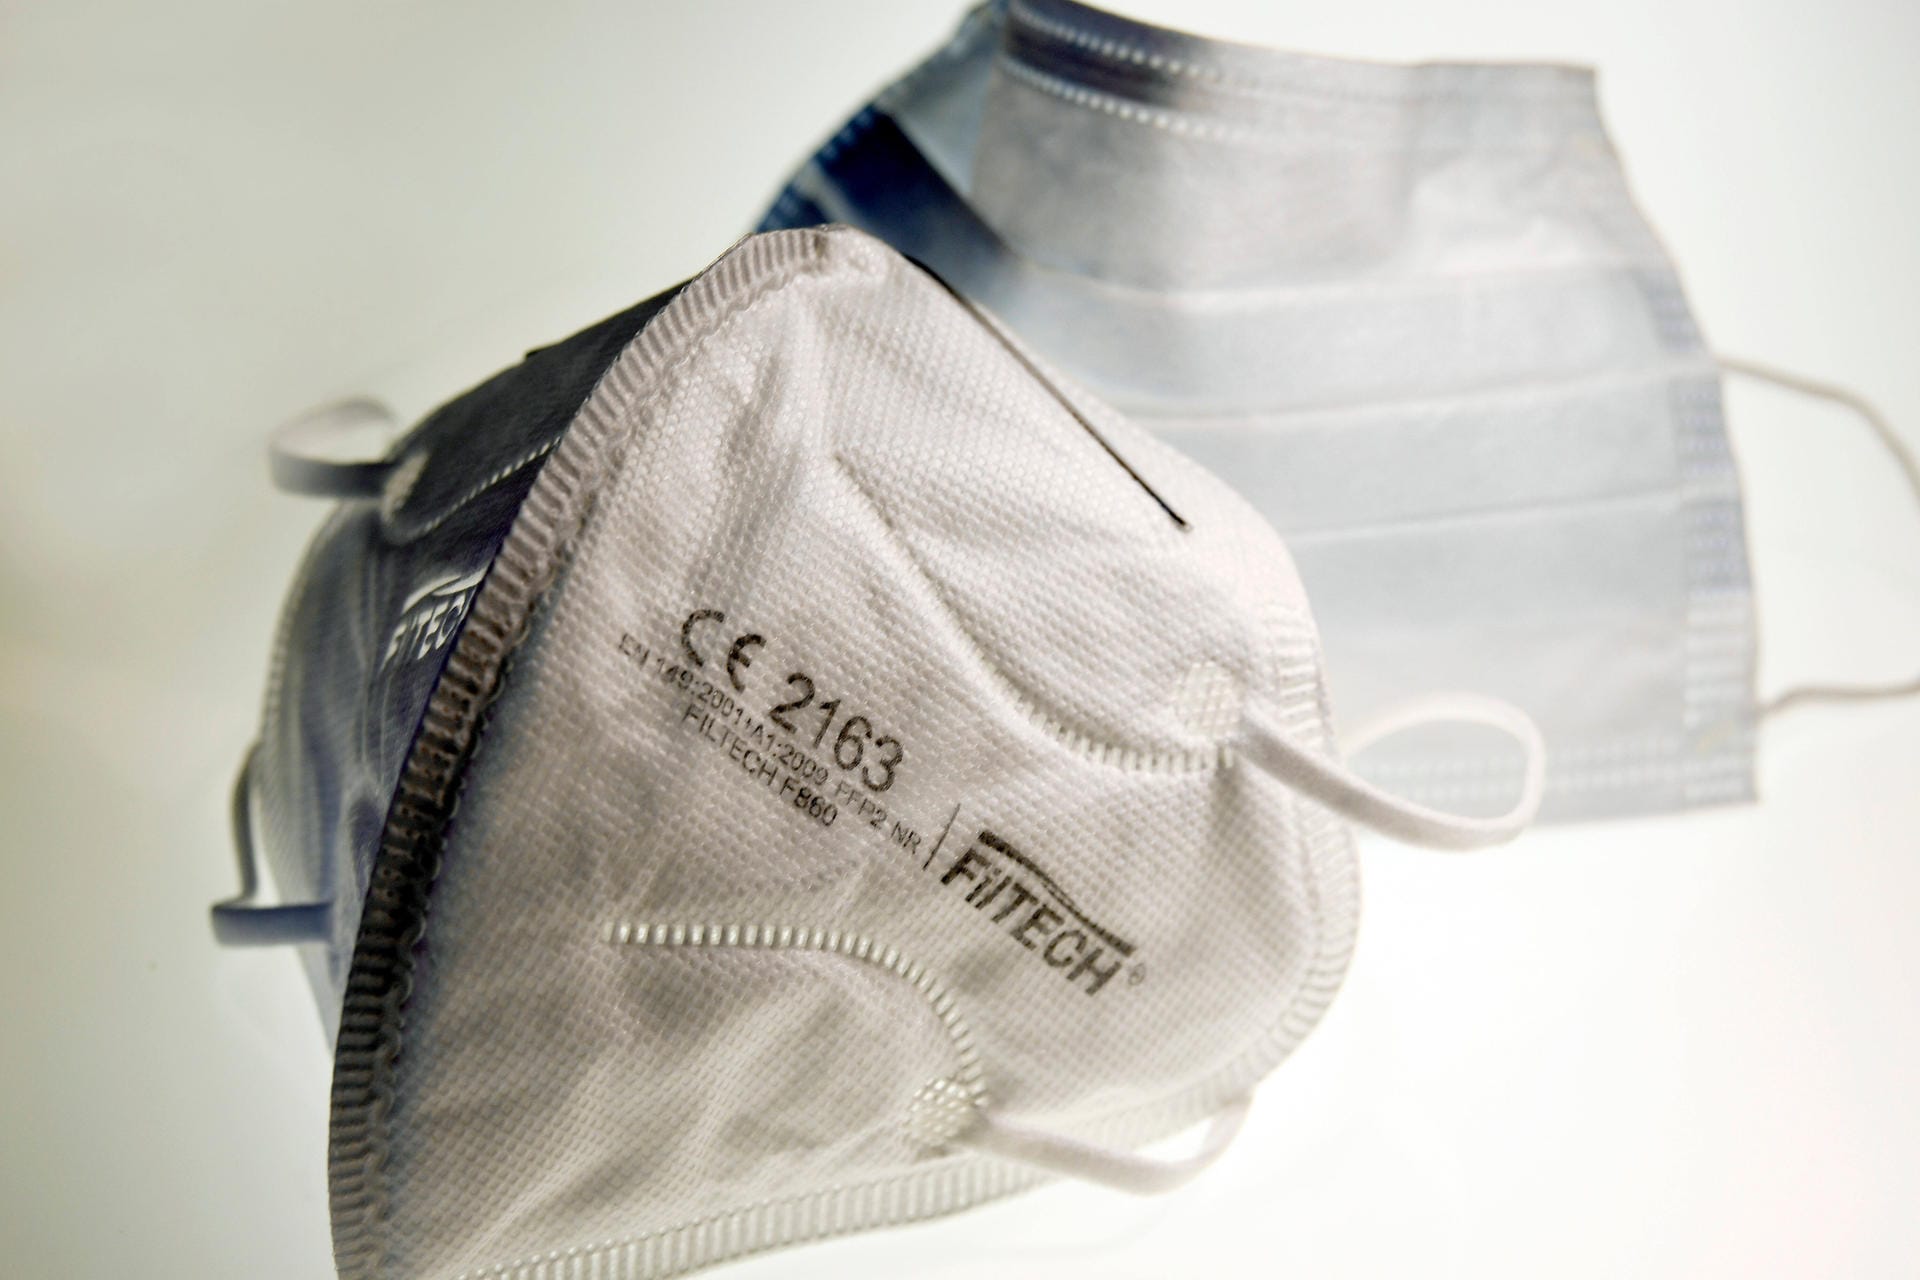 FFP2-Masken schützen besser als Einweg- und Stoffmasken vor dem Coronavirus. Achten Sie beim Kauf auf die Angaben auf der Verpackung. Bei qualitativ hochwertigen Produkten befindet sich dort eine Kombination aus CE-Kennzeichnung und vier Zahlen.